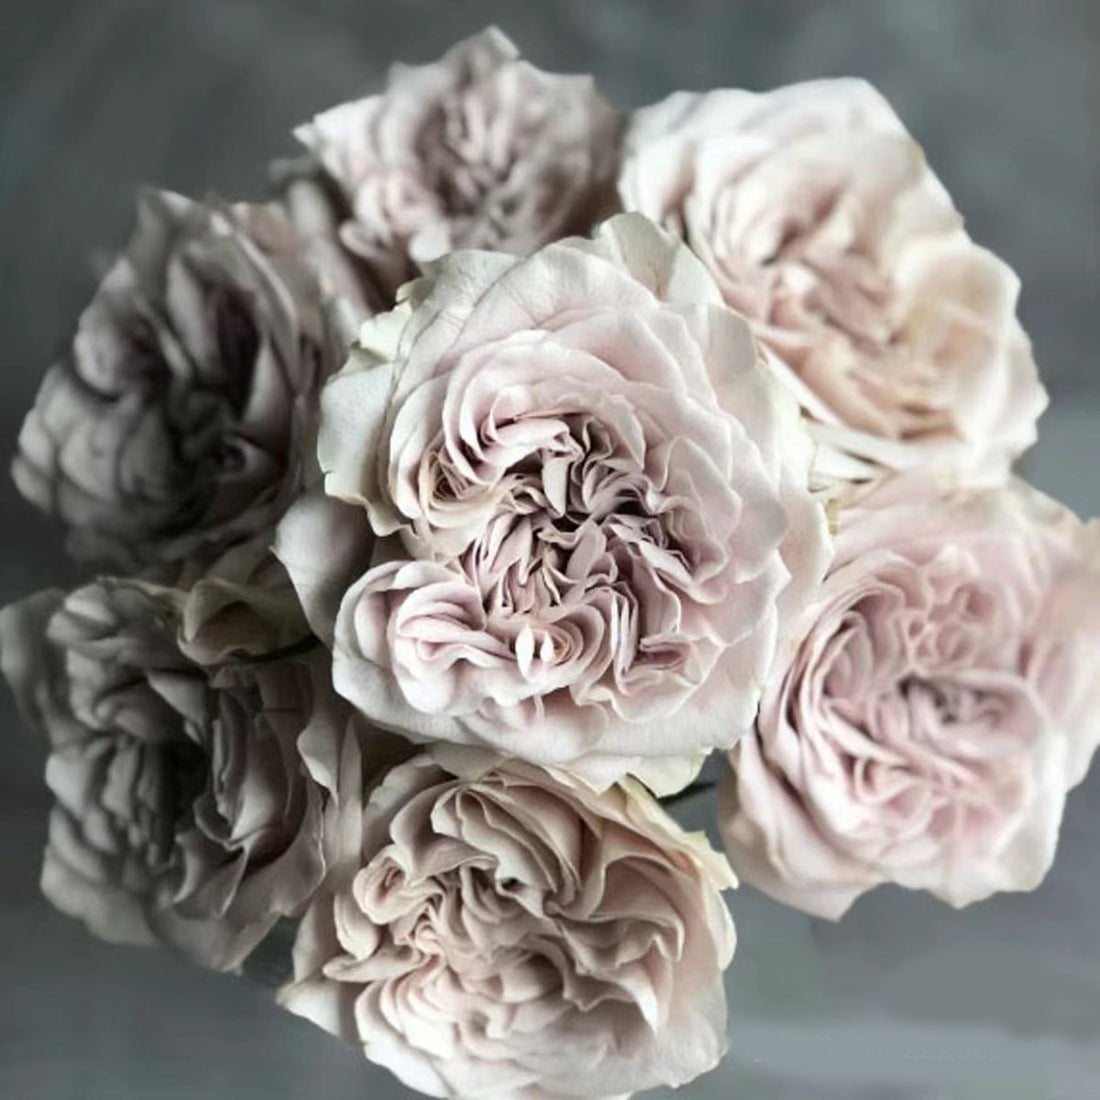 Netherlands Florist Shrub Rose